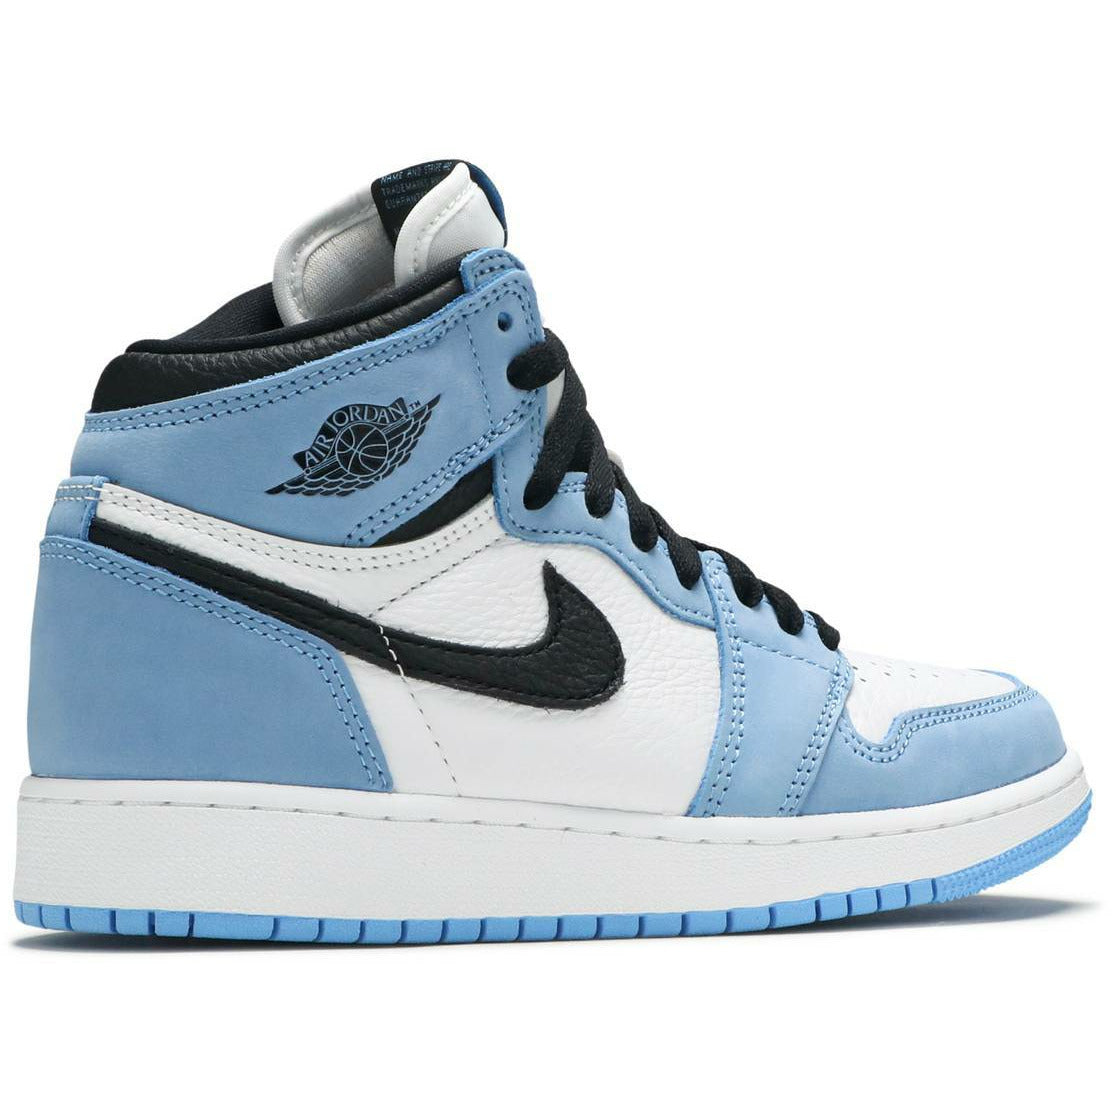 Air Jordan Retro High "University Blue" (GS / Juniors) (2021) mrsneaker